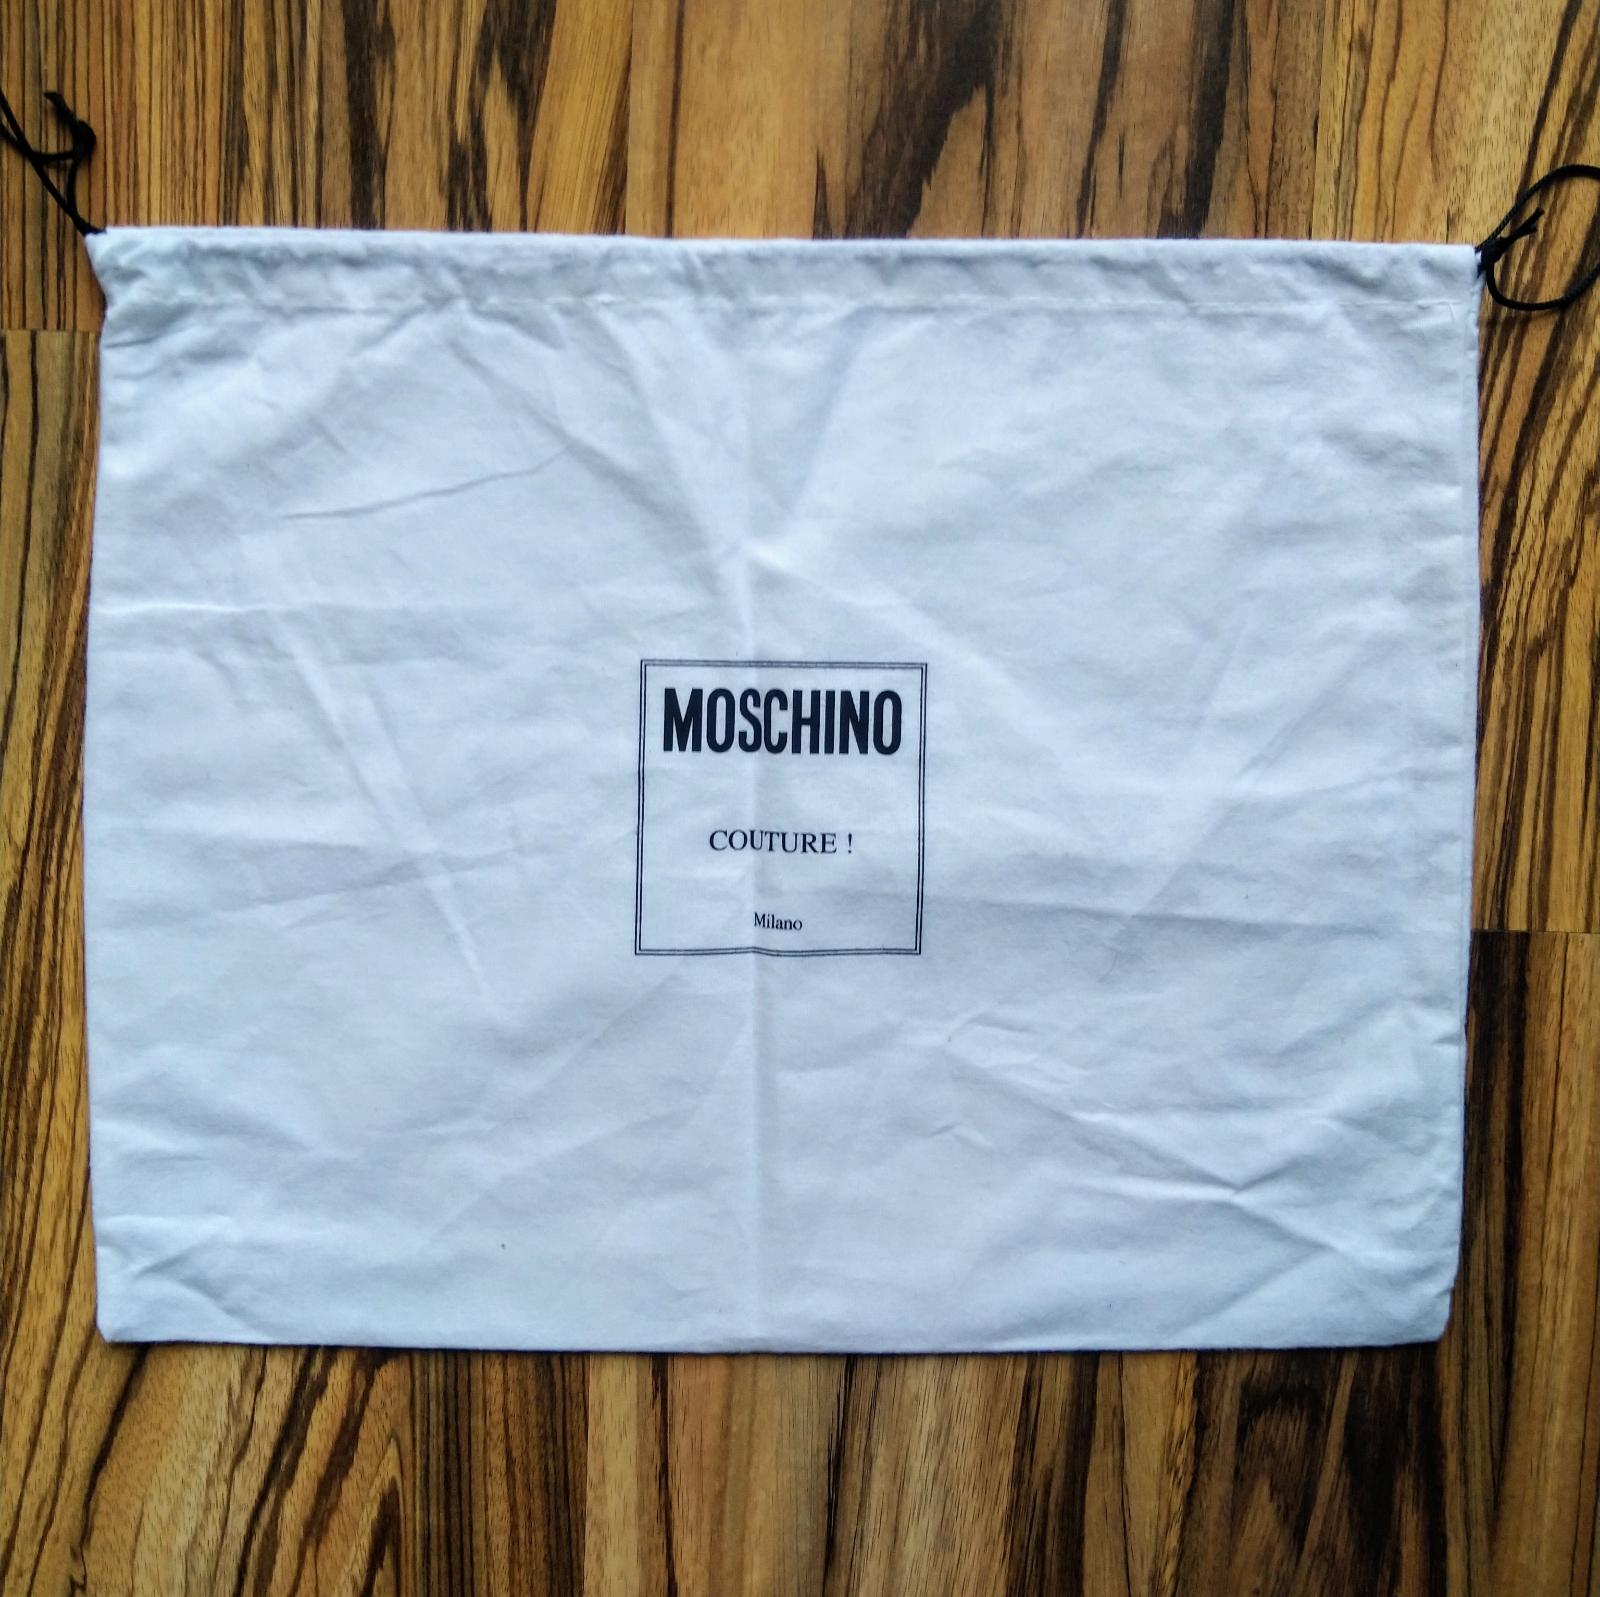 MOSCHINO - vrecko na kabelku 40 x 32 cm - Oblečenie, obuv a doplnky